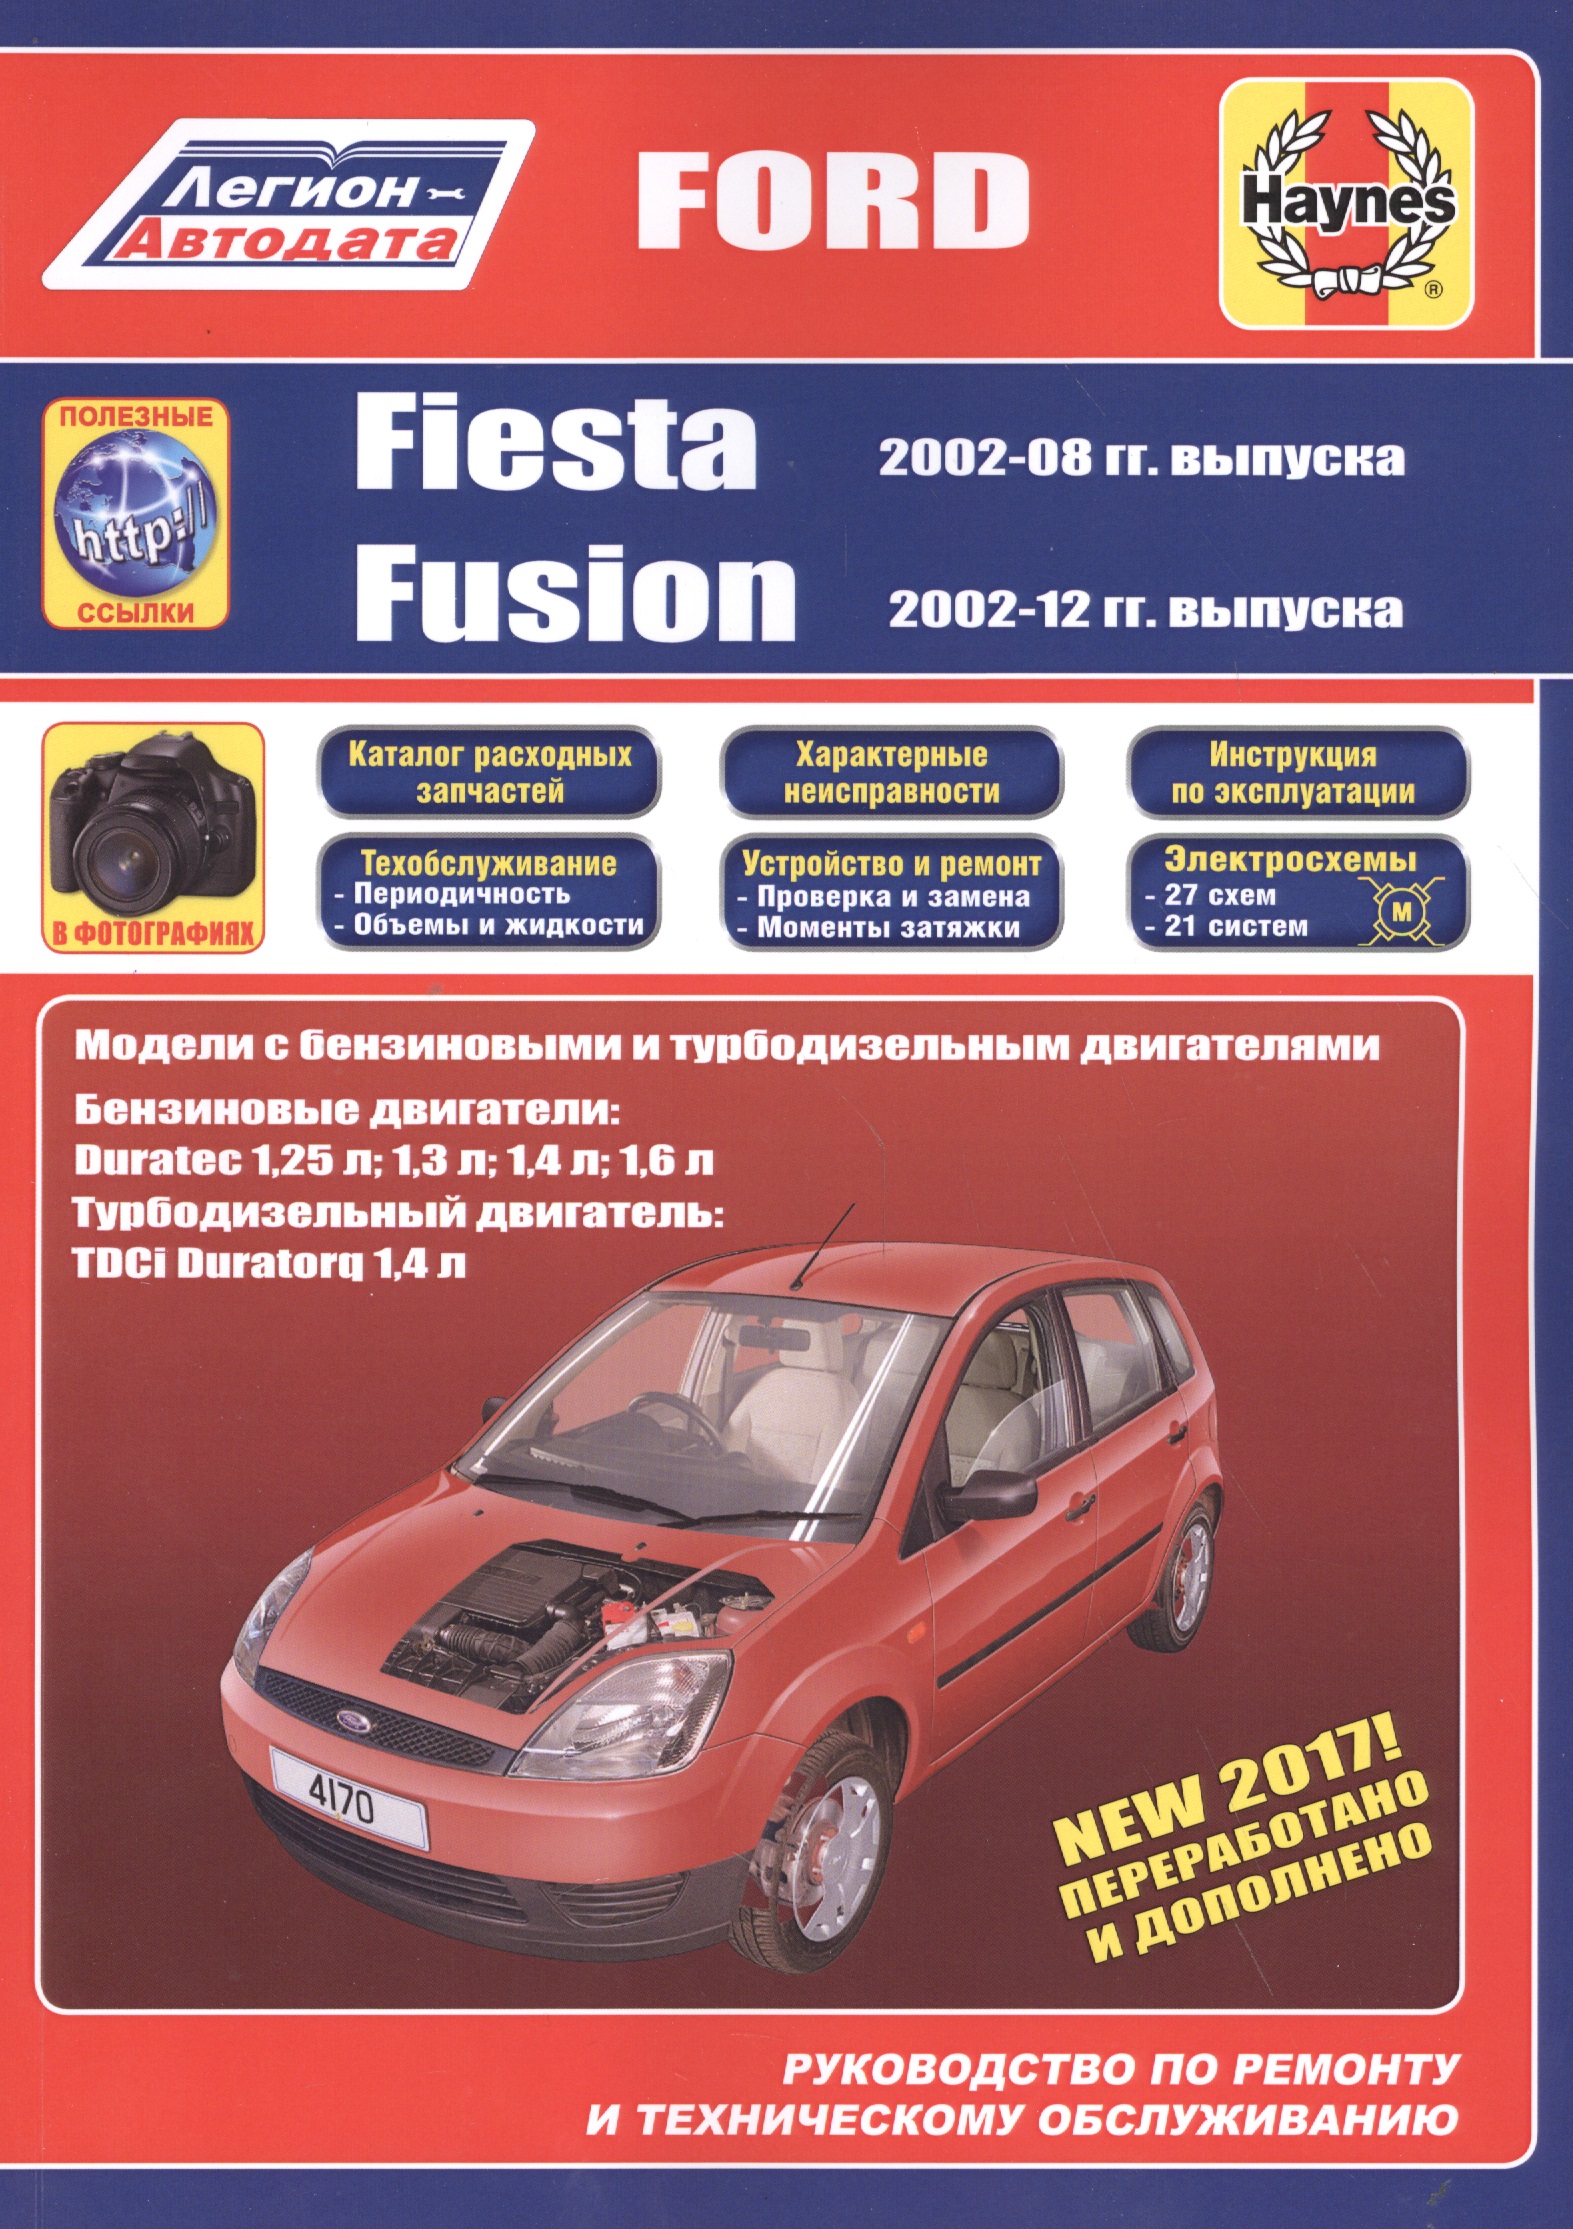 Ford Fiesta & Fusion 2002-08/12 бензин и дизель. Ремонт. Эксплуатация. ТО (ч/б фотографии+Каталог расходных з/ч, Характерные неисправности)